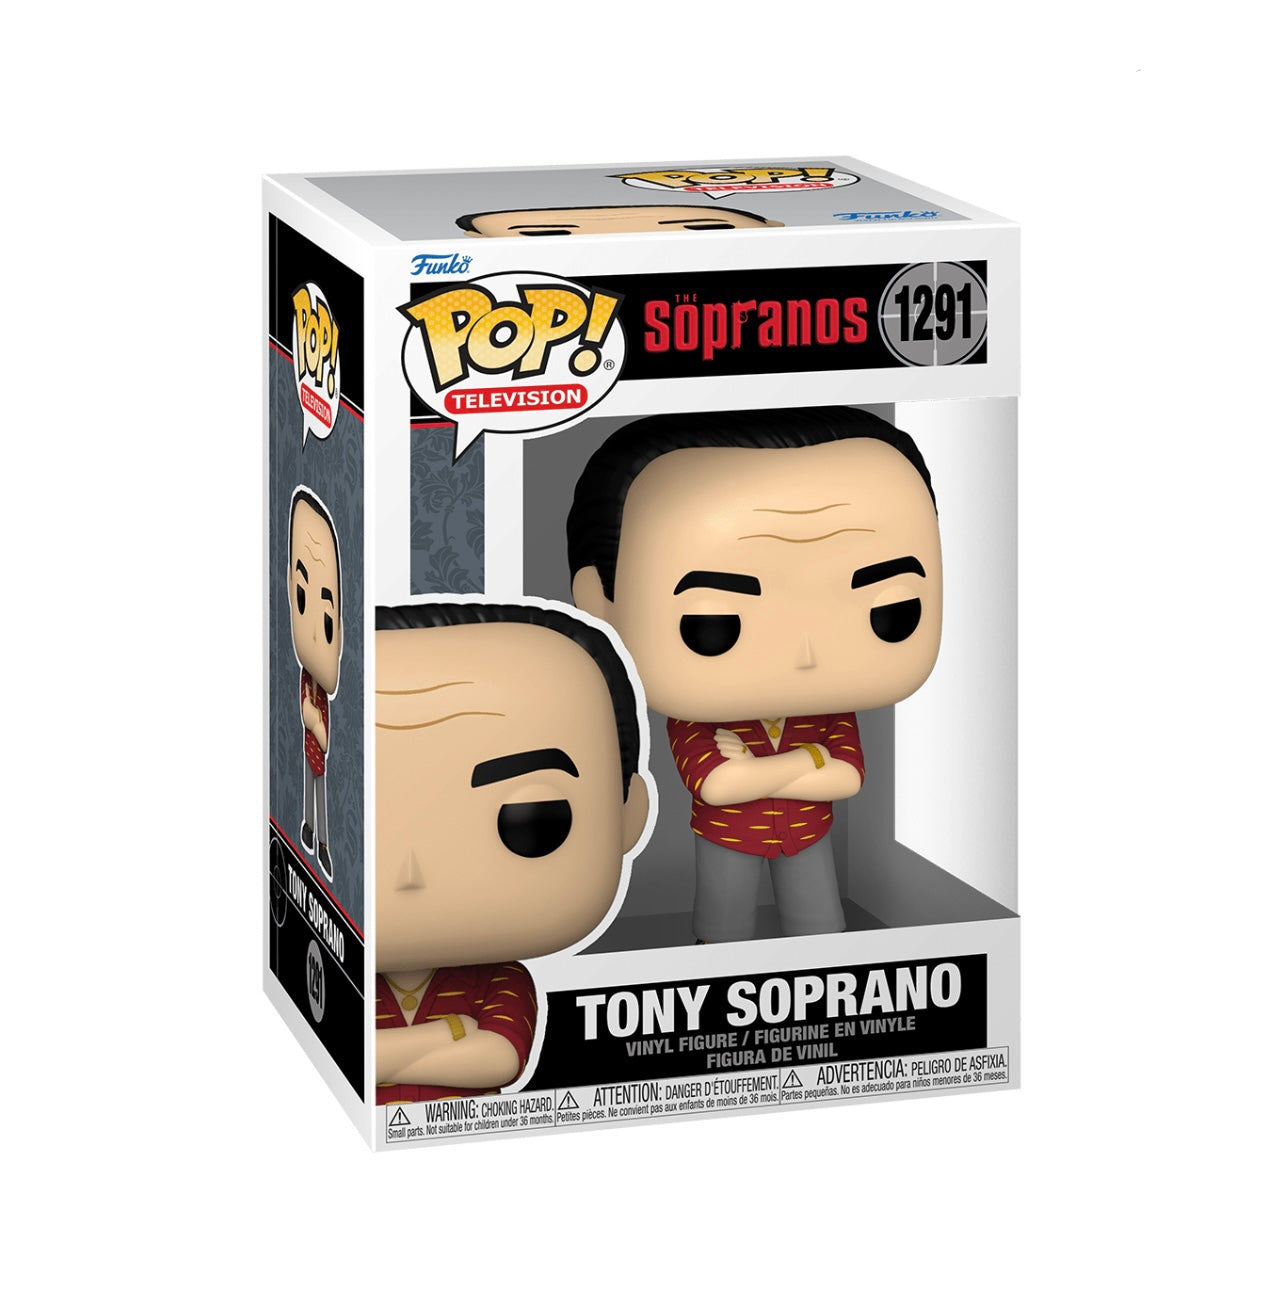 POP! TV Sopranos Tony Soprano #1291